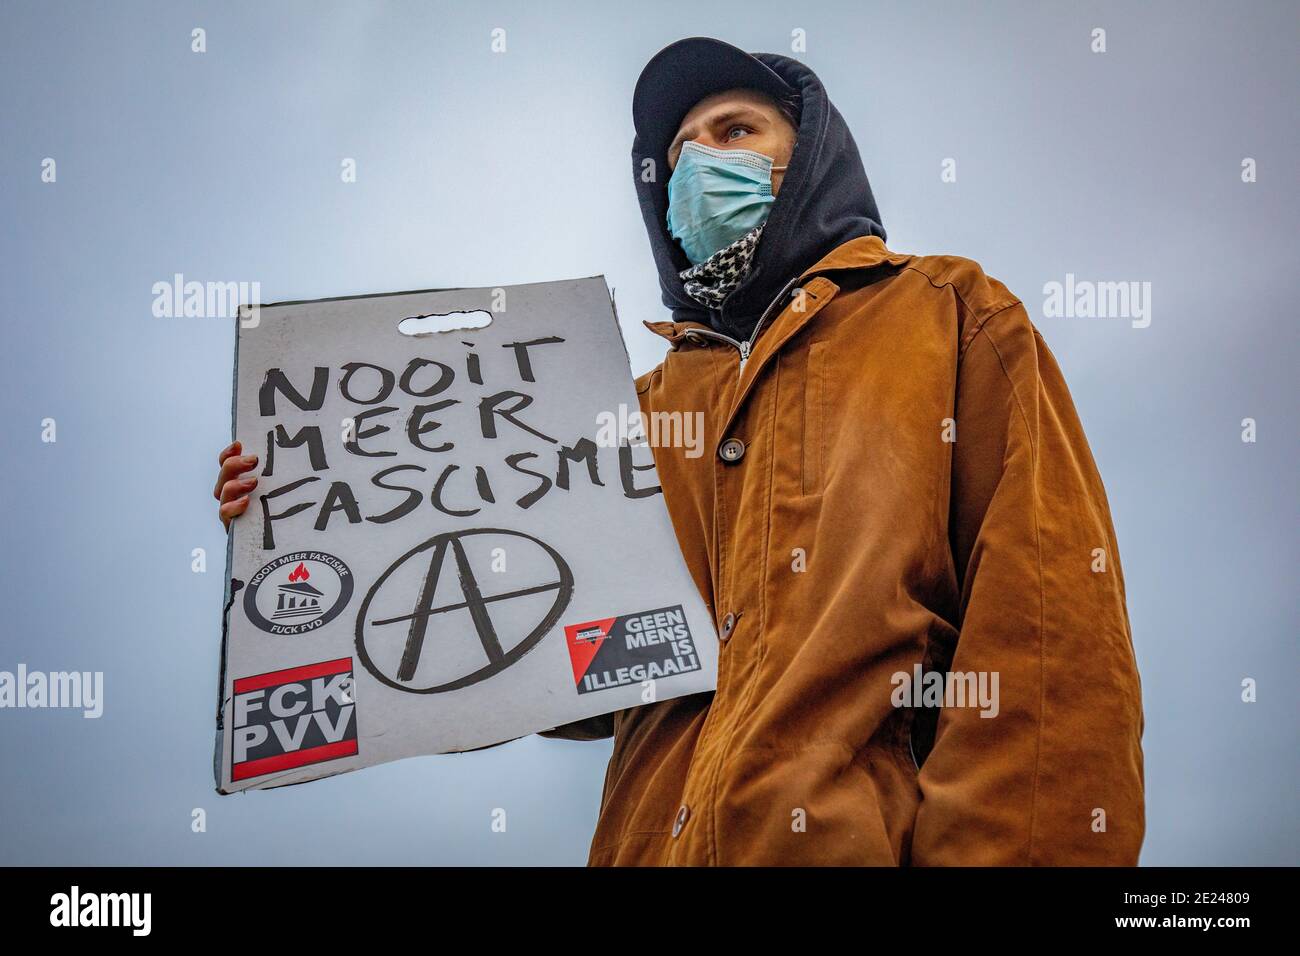 AMSTERDAM, PAYS-BAS - JANVIER 10 : un manifestant est vu lors d'une manifestation anti-fascisme dans le Westerpark le 10 janvier 2021 à Amsterdam, pays-Bas Banque D'Images